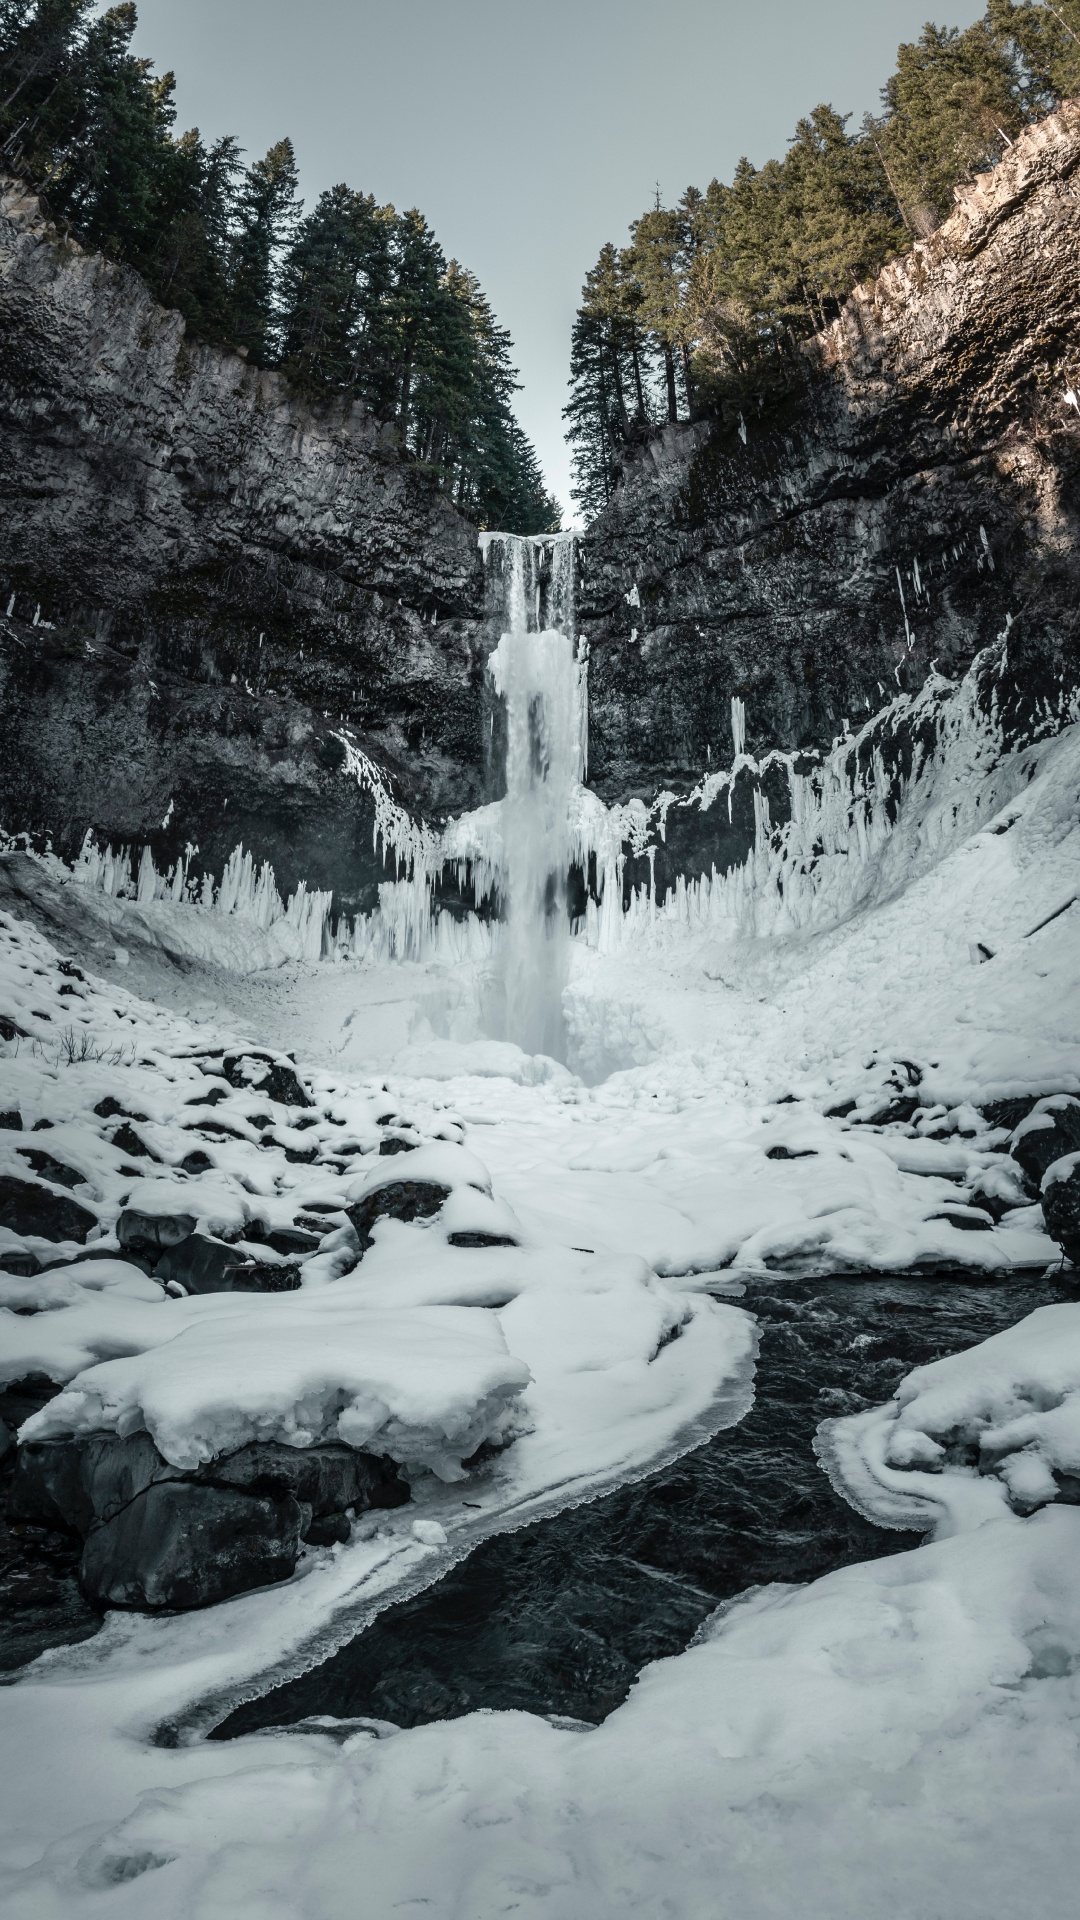 Wasserfall, Natur, Wasser, Winter, Schnee. Wallpaper in 1080x1920 Resolution